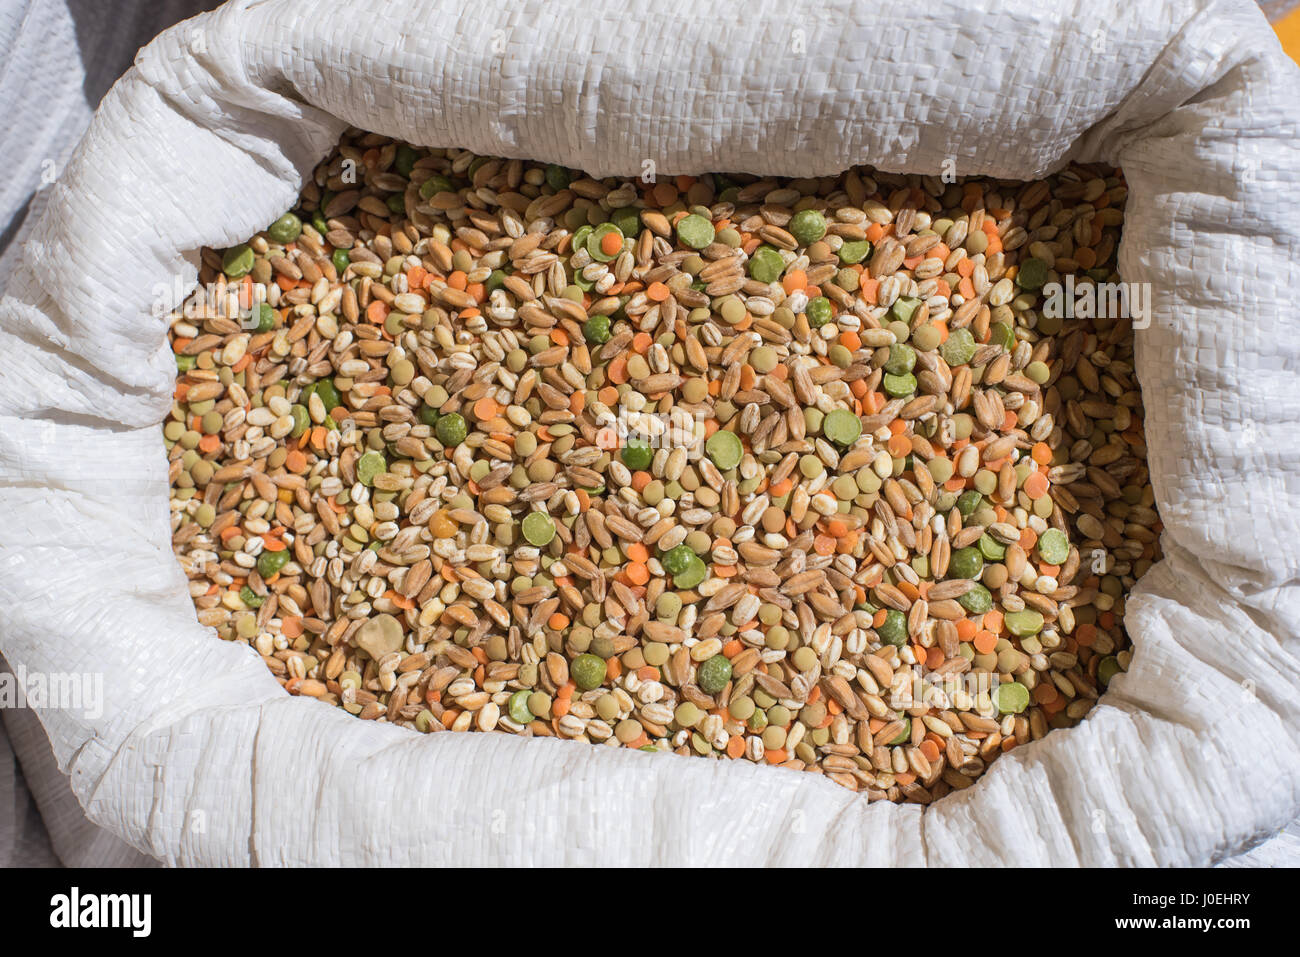 Mezcla legumbre y cereales el detalle del patrón en bolsa blanca en el estante del mercado Foto de stock